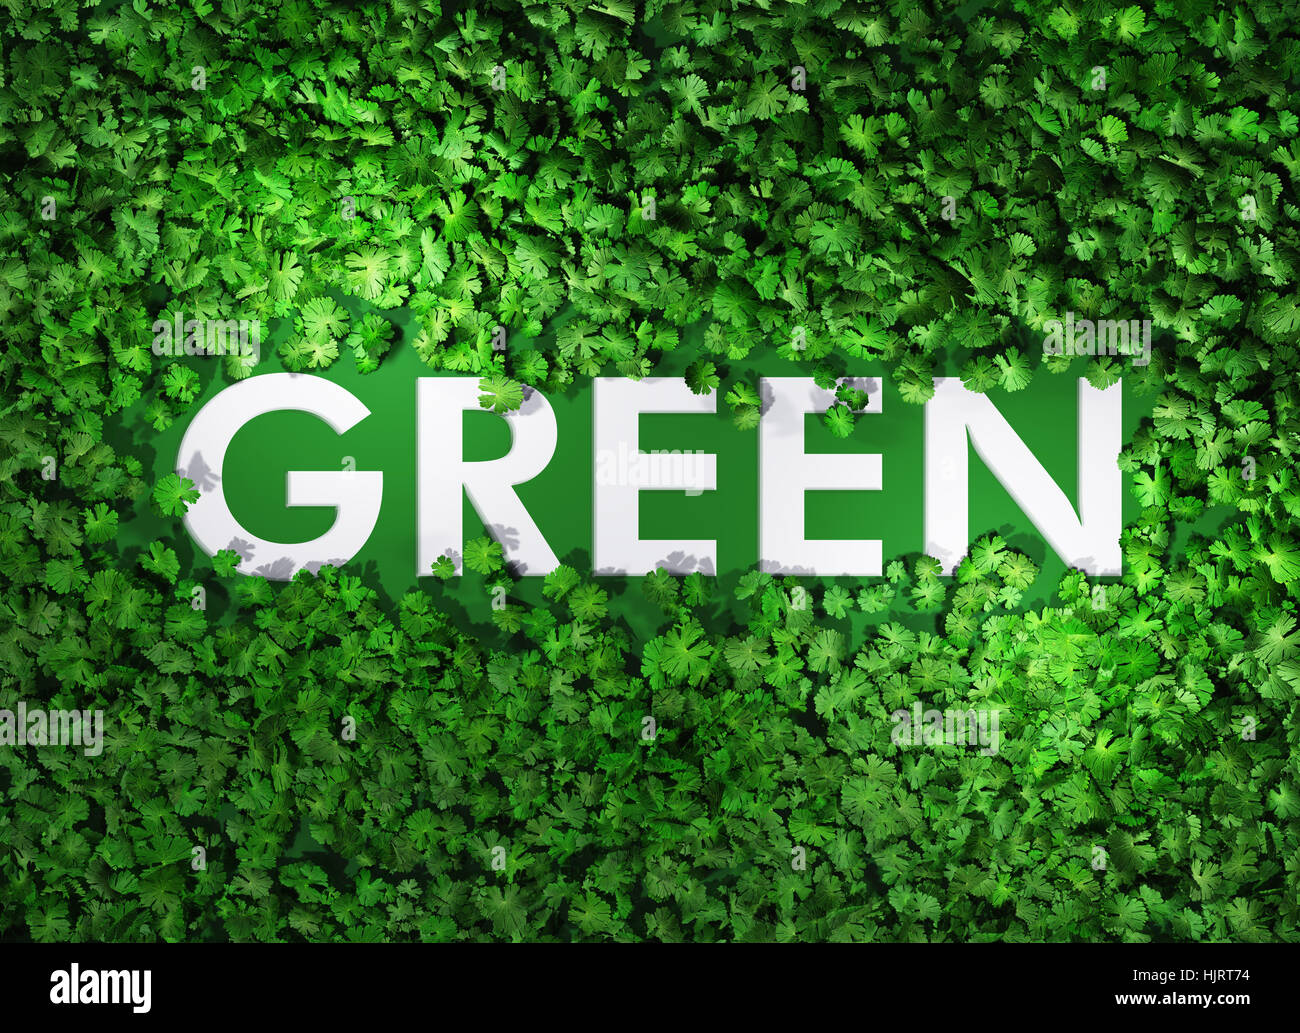 Как сделать текст зеленым. Green слово. Слово зеленый. Word зеленый. Картинка со словом зеленый.